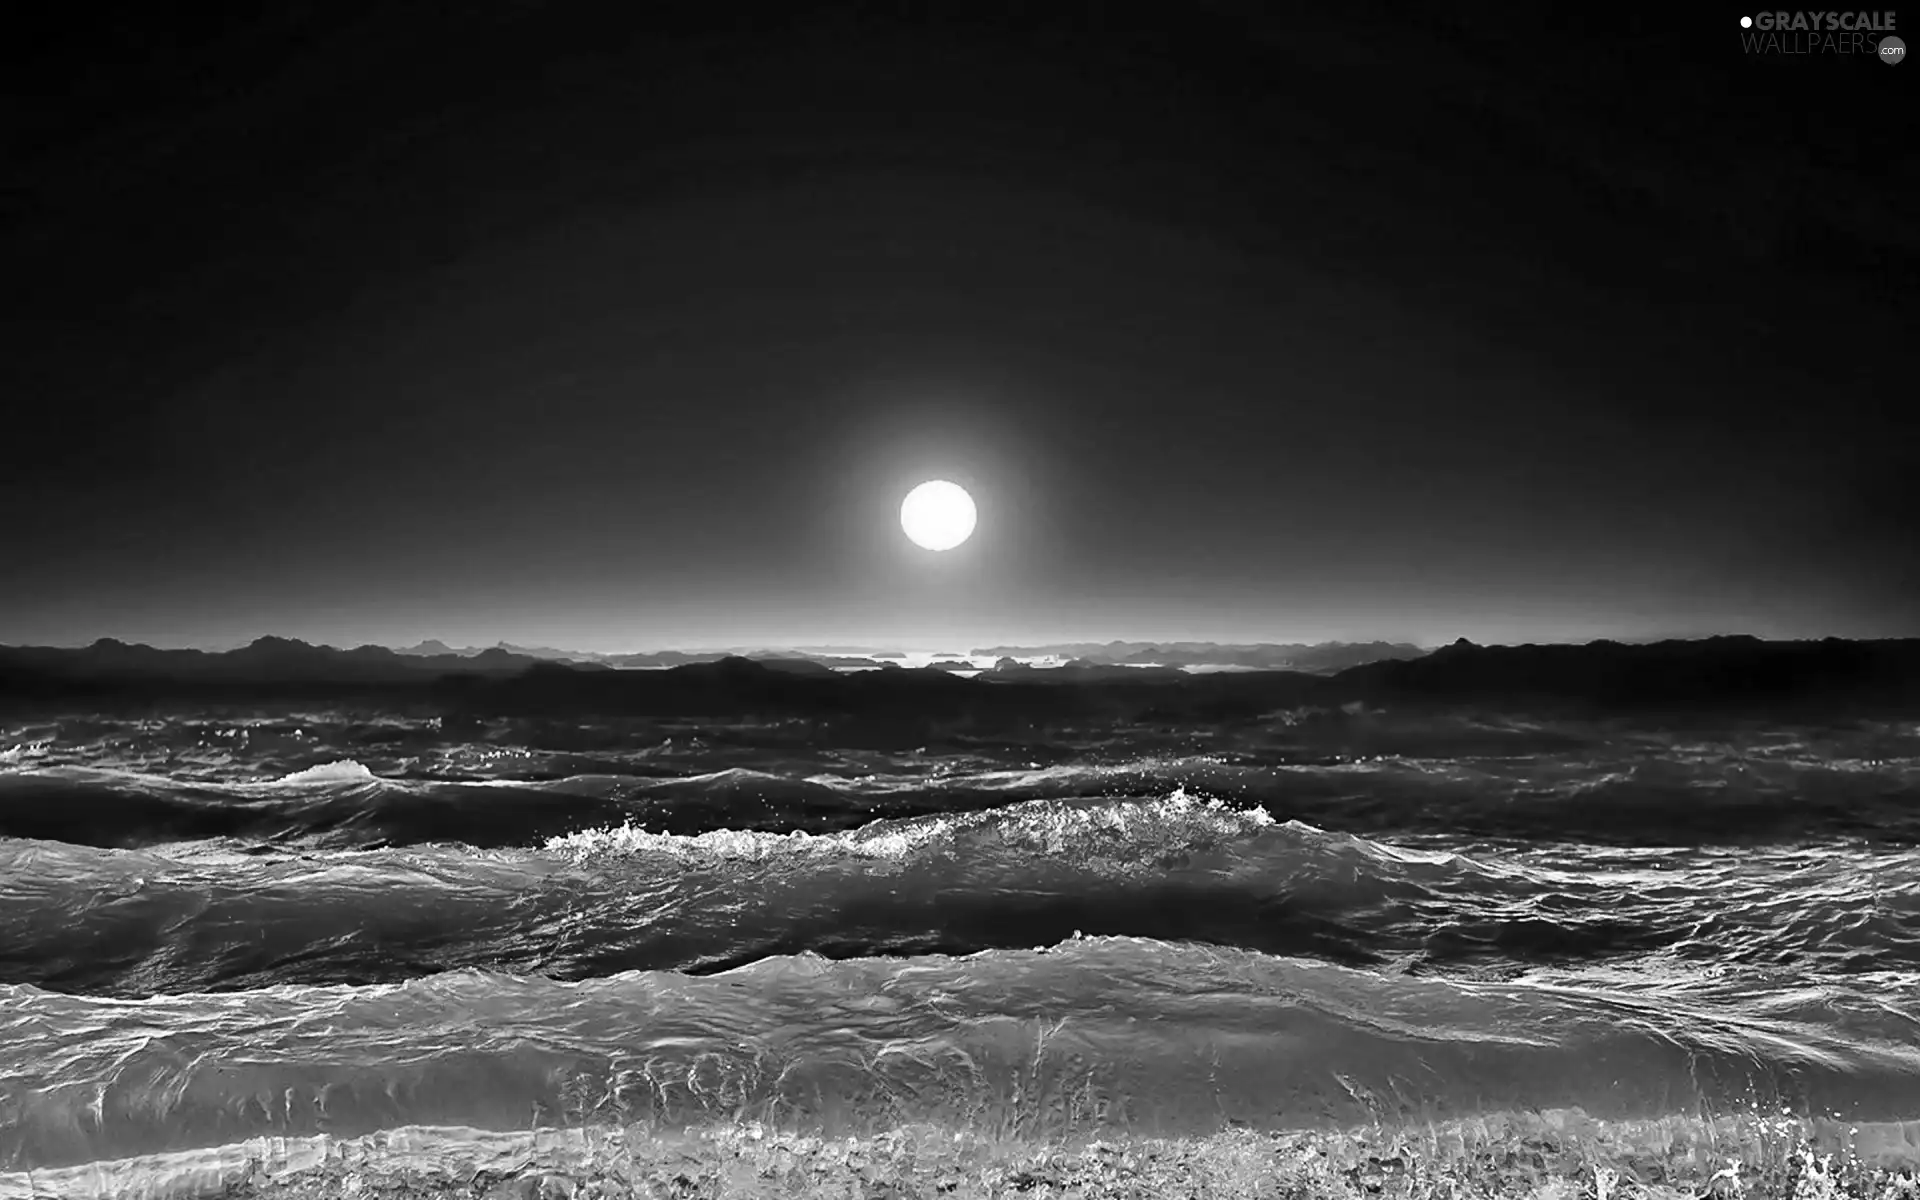 sea, Night, moon, Waves